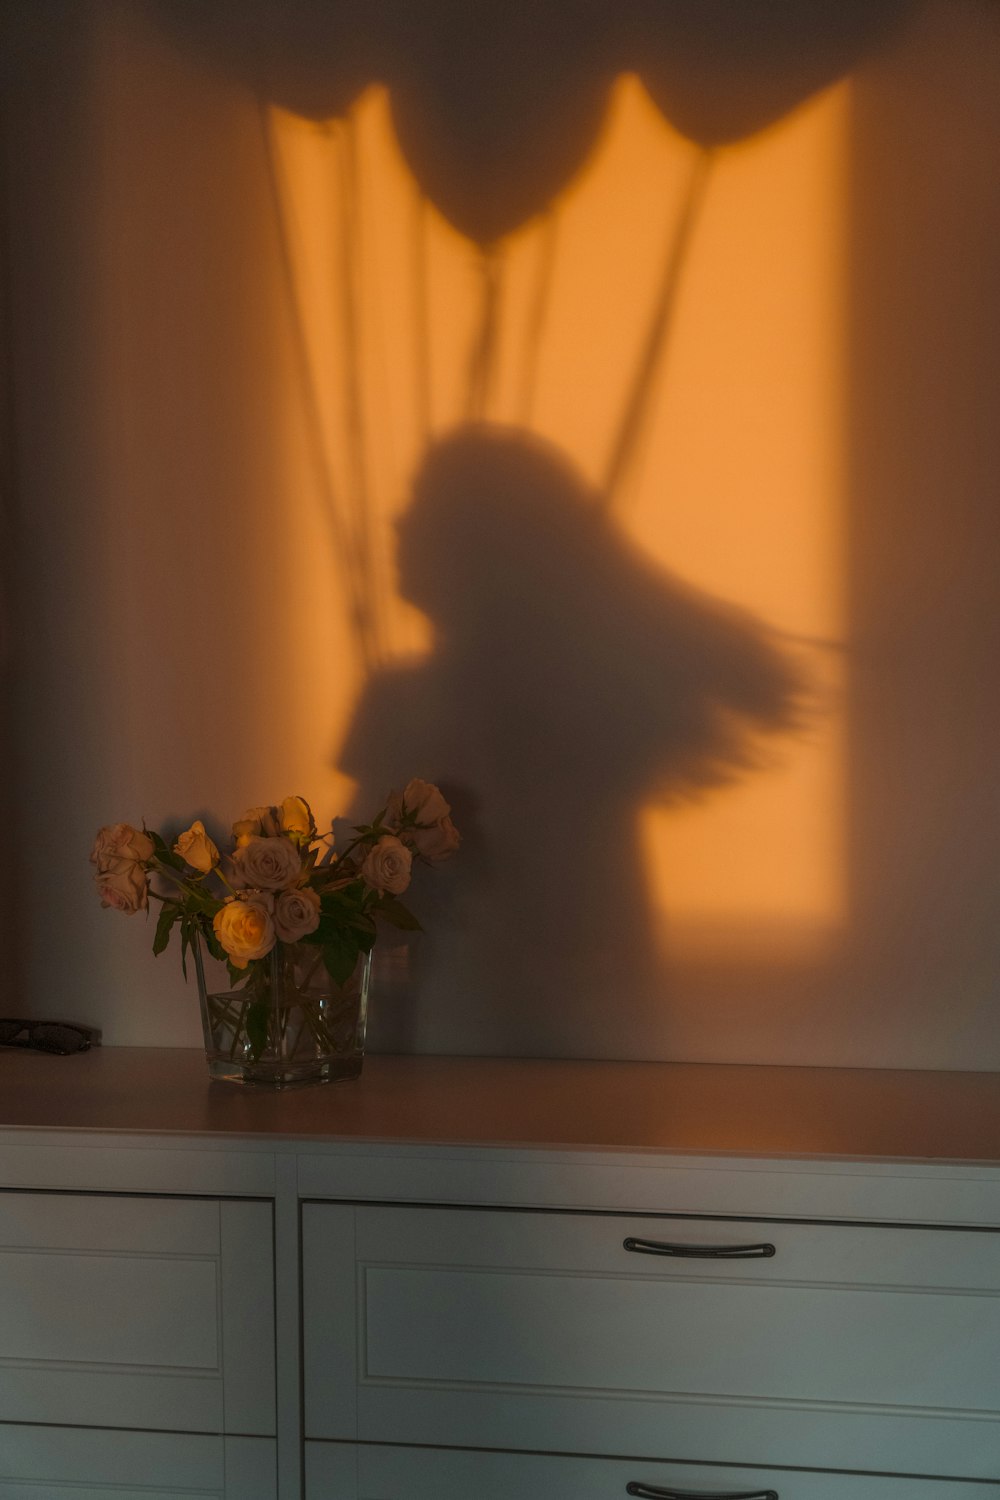 a shadow of a bird on a wall next to a vase of flowers